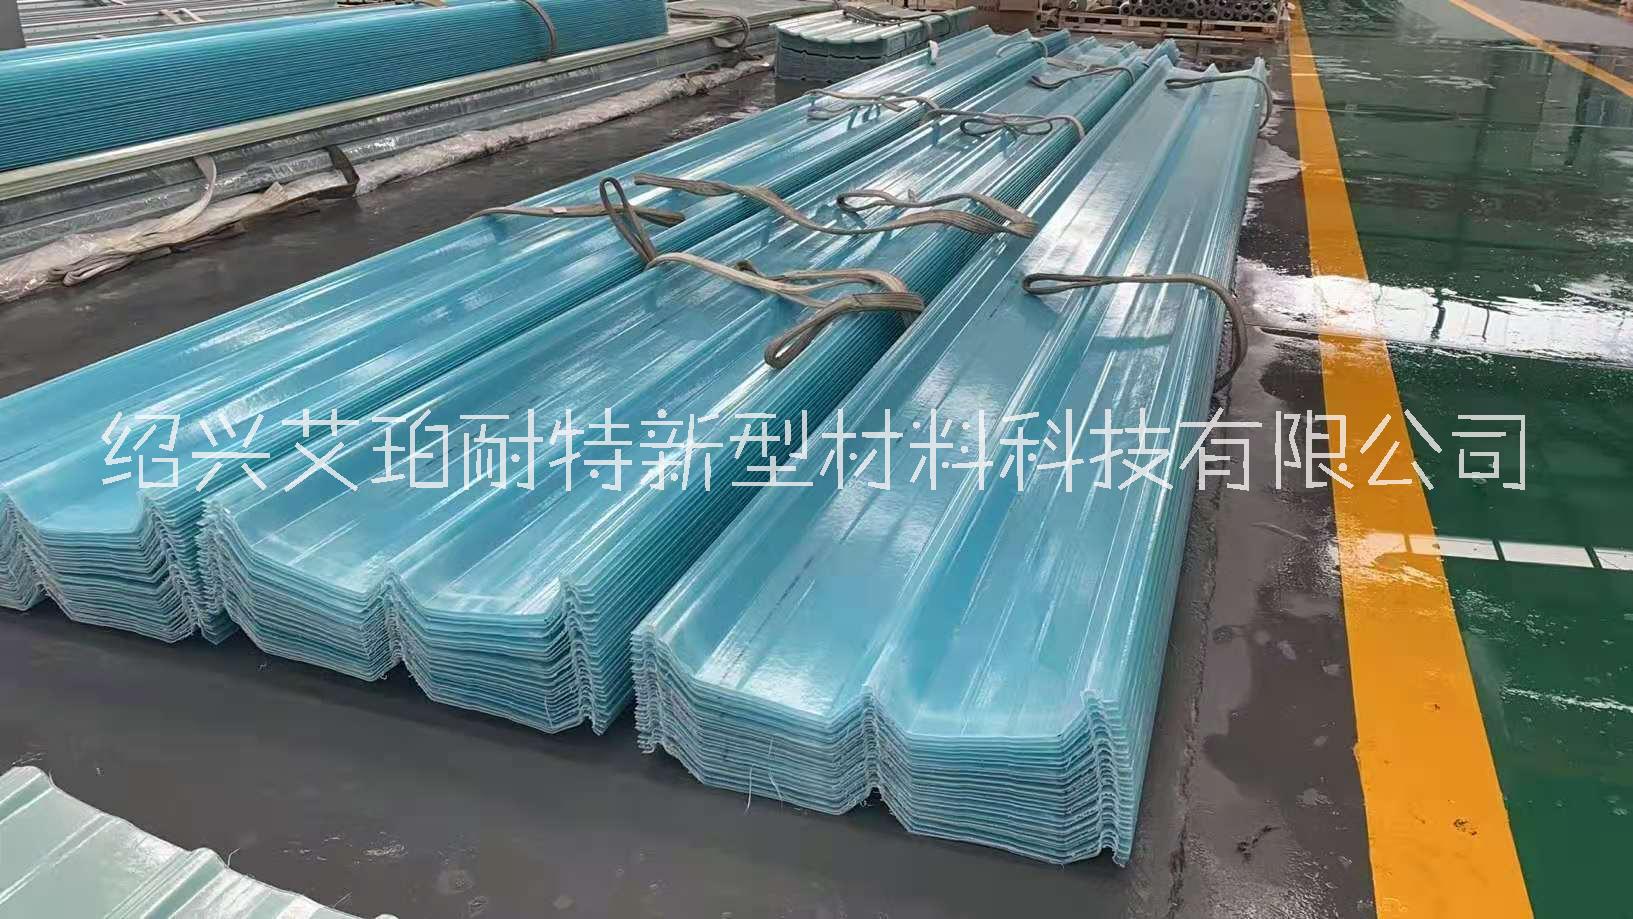 浙江省杭州艾珀耐特470型钢收边采光瓦